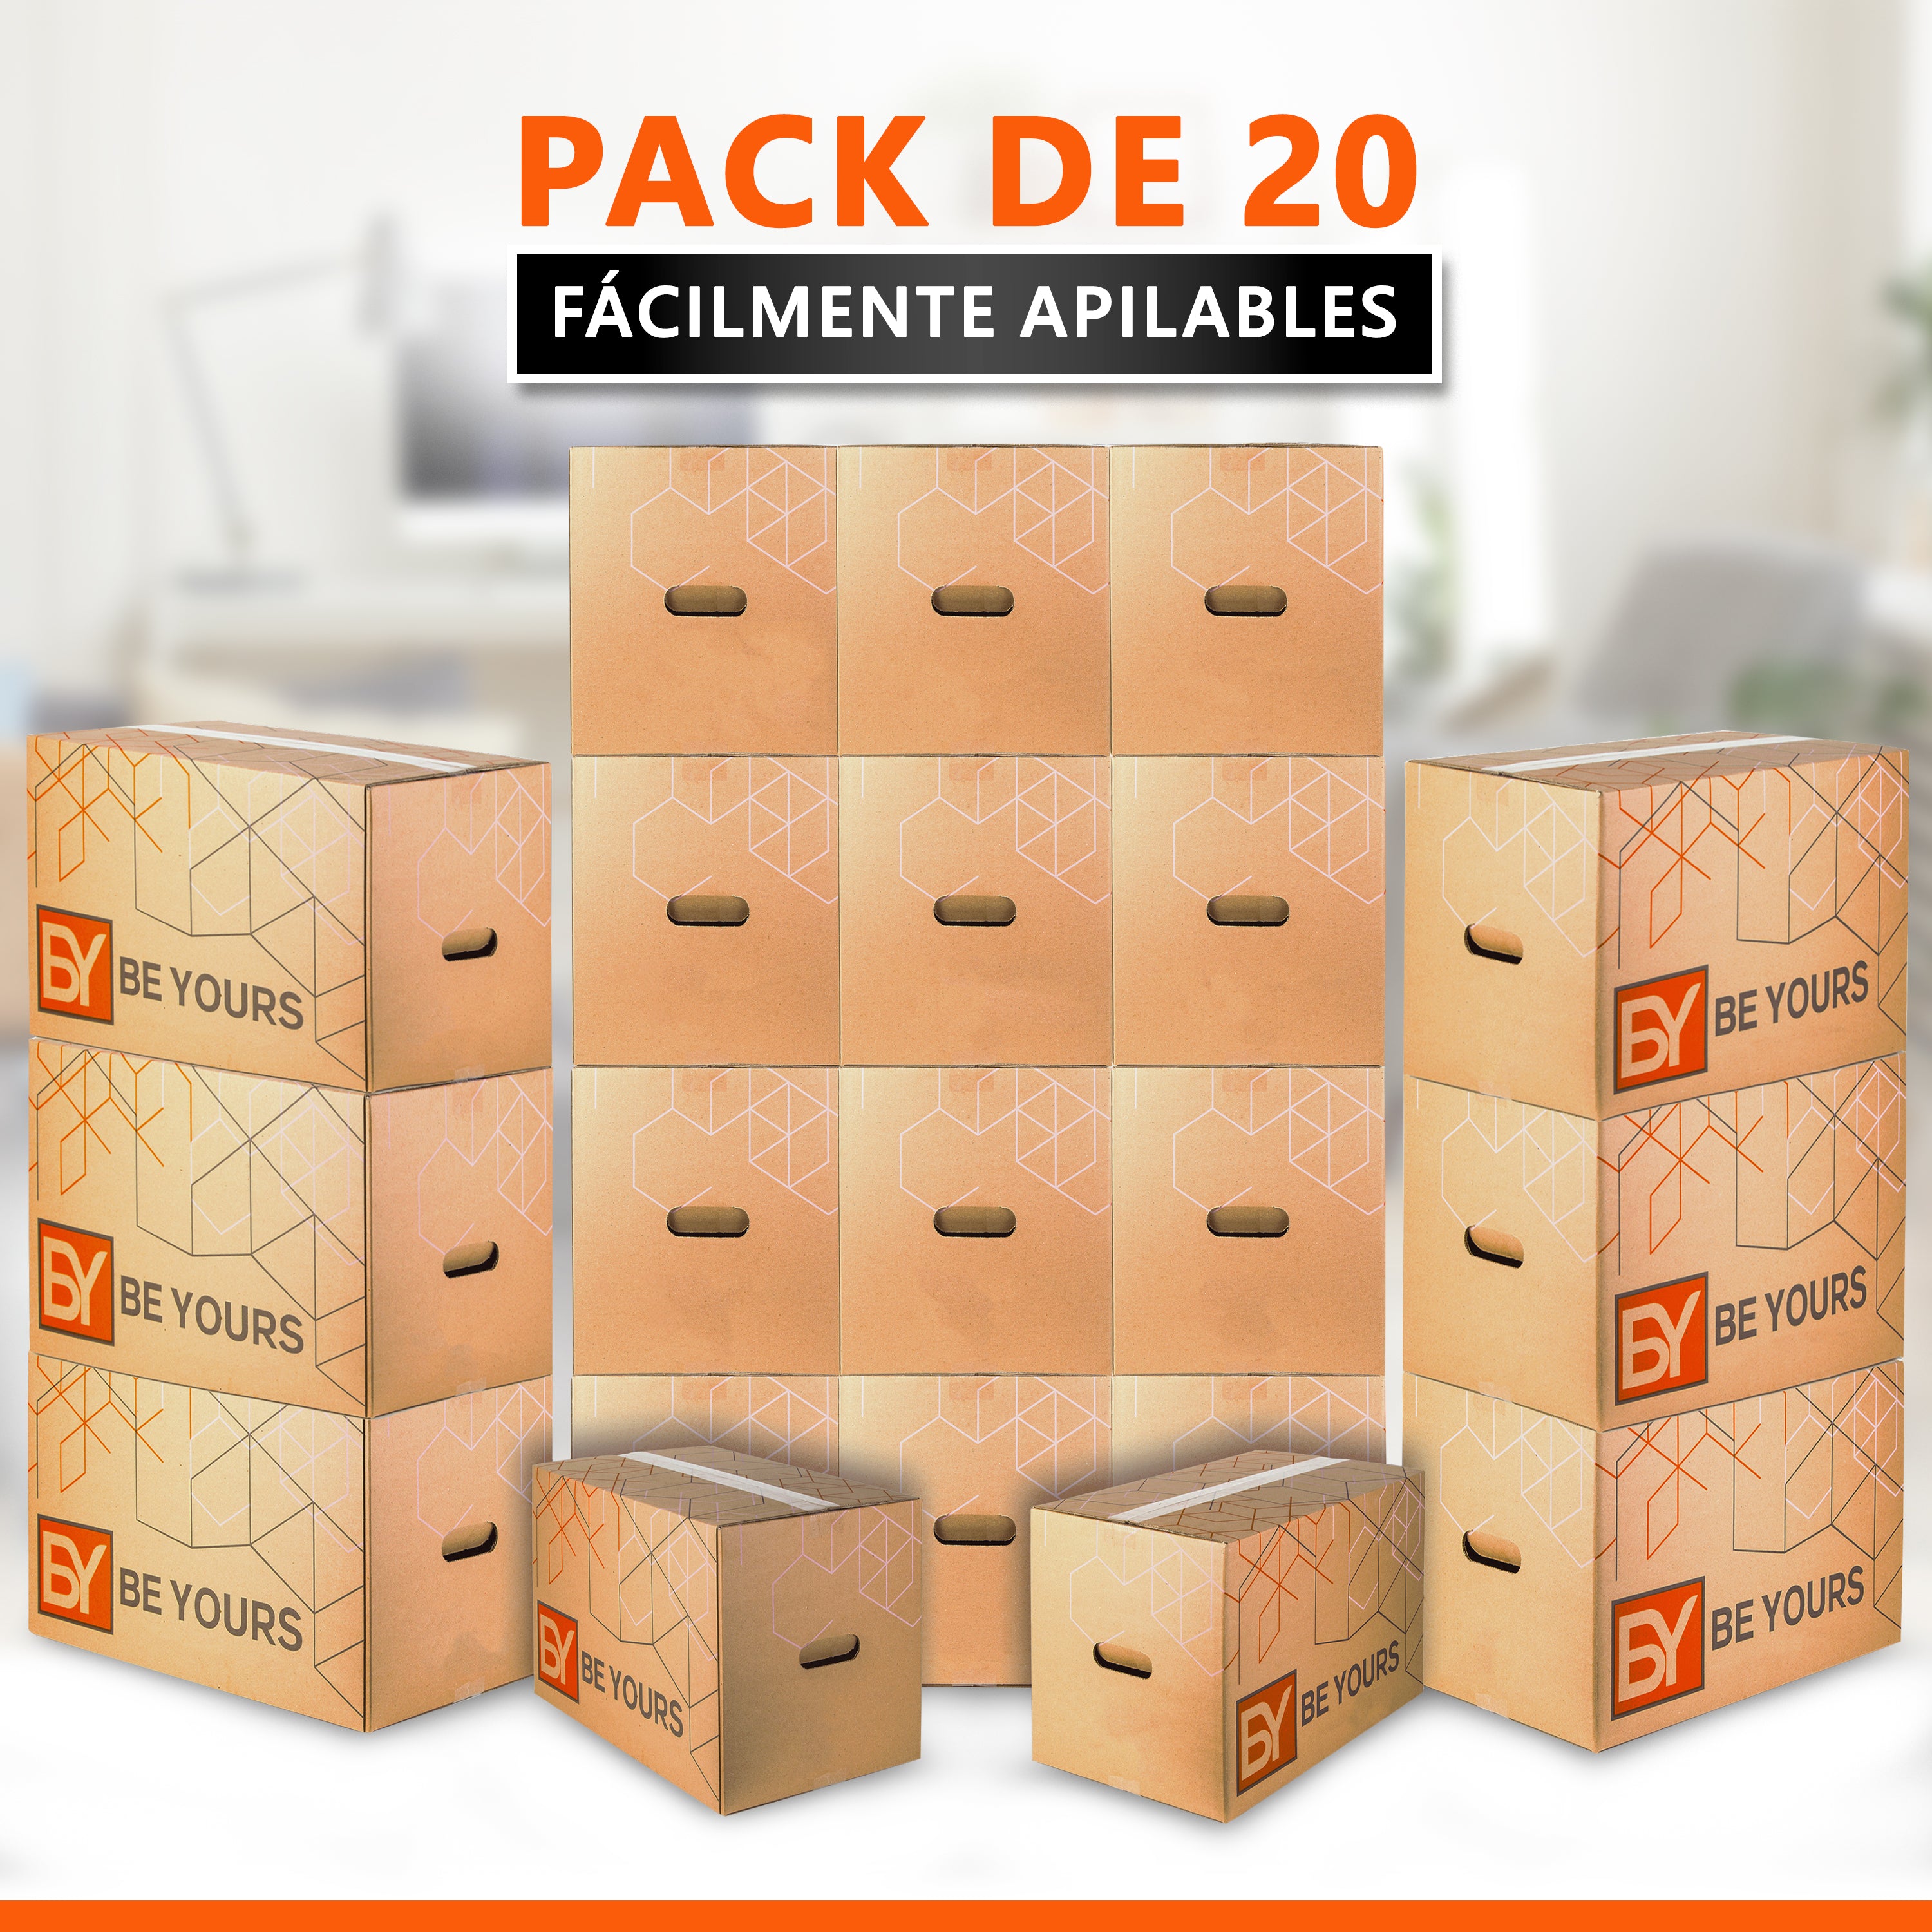 Pack 10 Cajas Cartón Nuevas L39 A33 H32 Cargar Fácil Mudanza